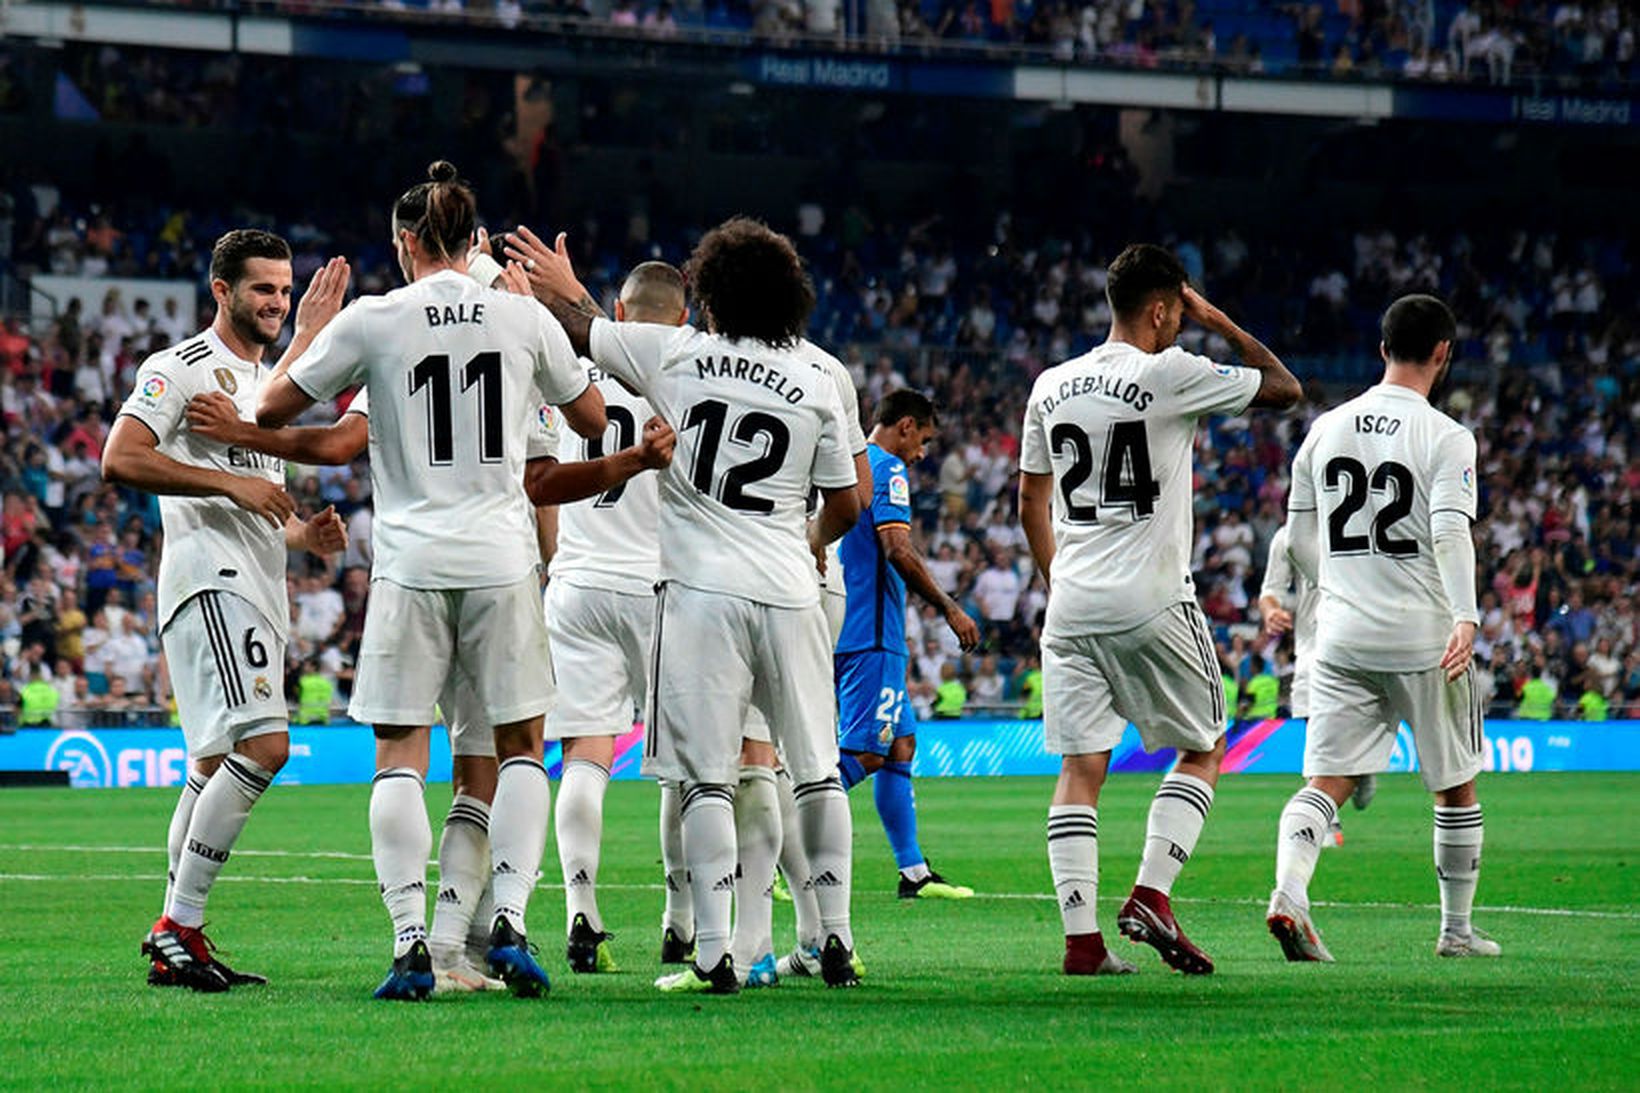 Leikmenn Real Madrid fagna marki Gareth Bale í kvöld.